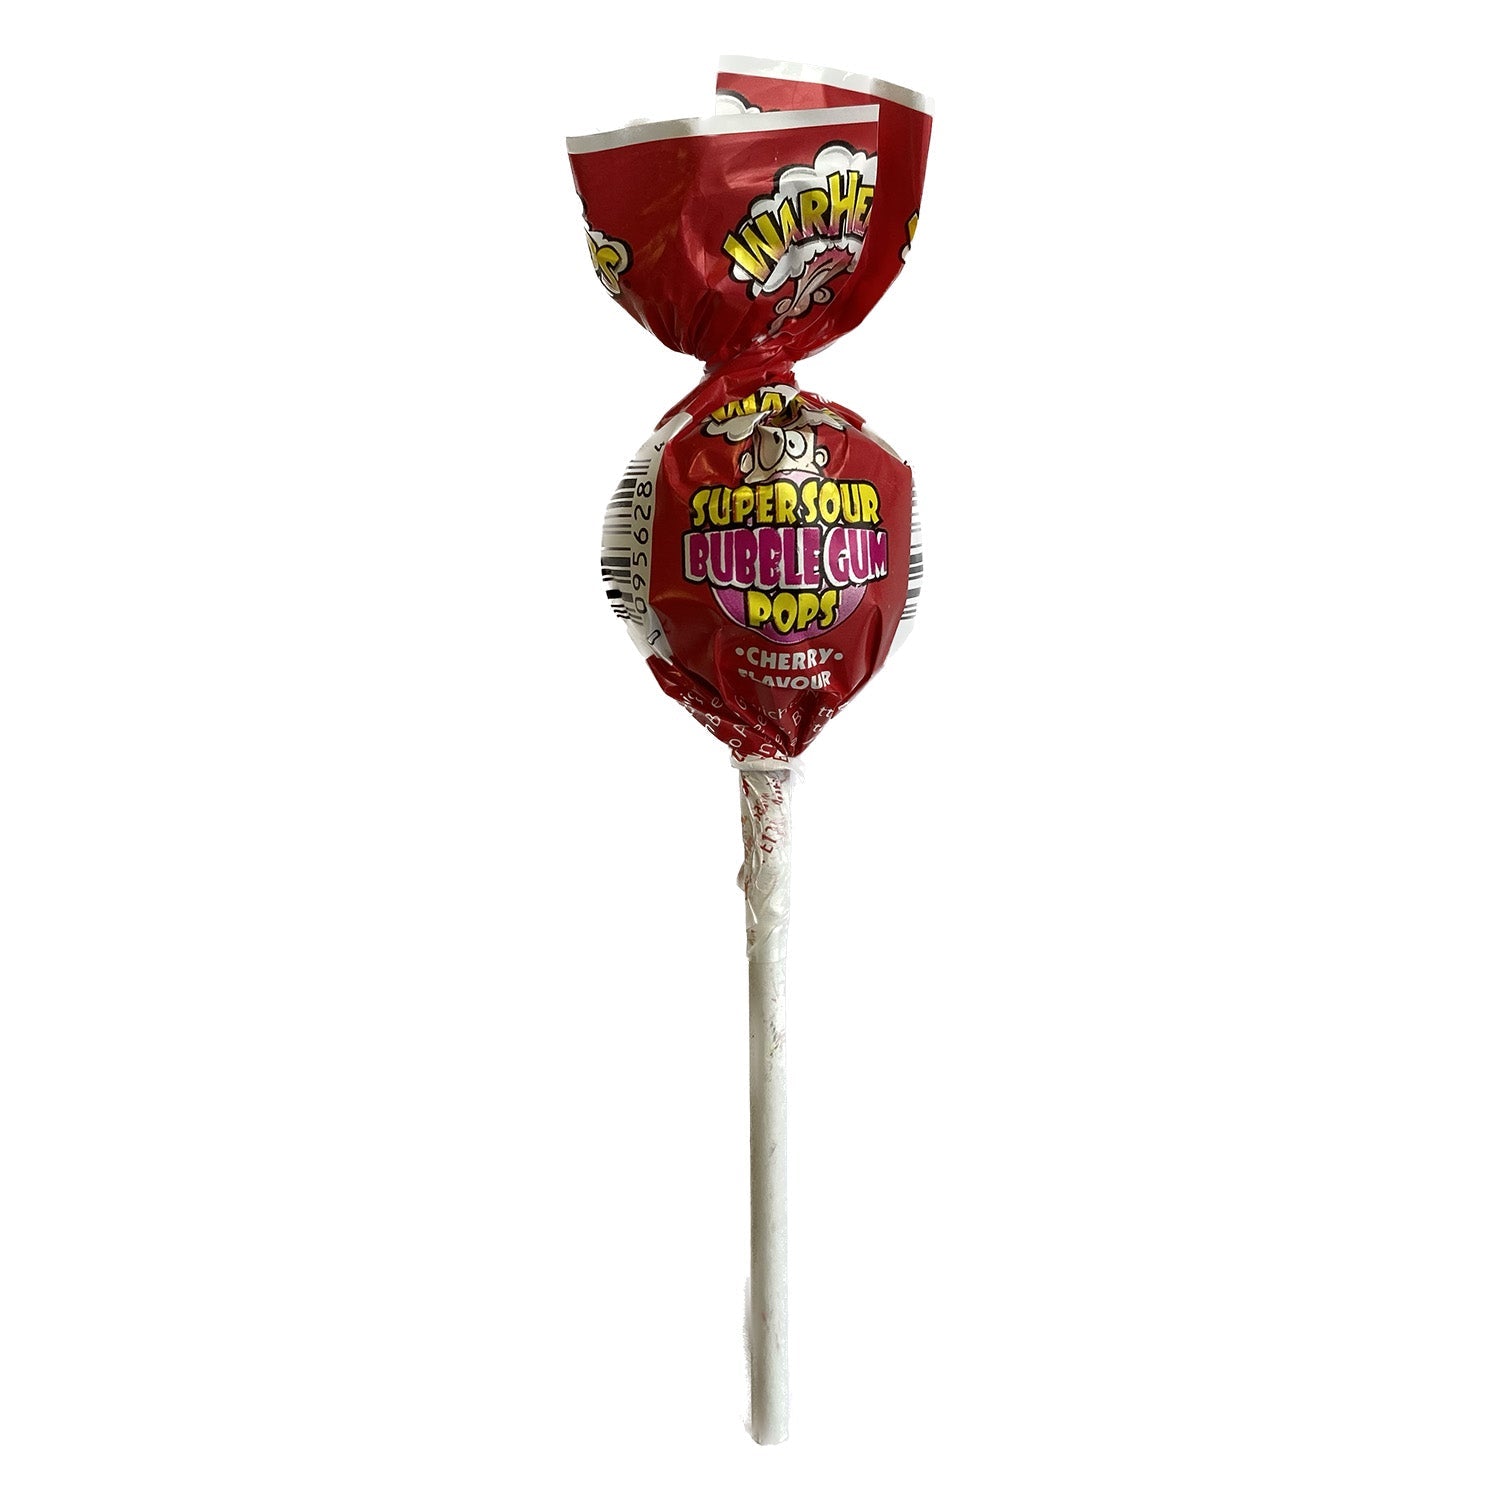 Warhead Super Sour Bubble Gum Pops Cherry (21 Gram) - van Warheads - Nu voor maar €0.30 bij Mijn Snoepgoed